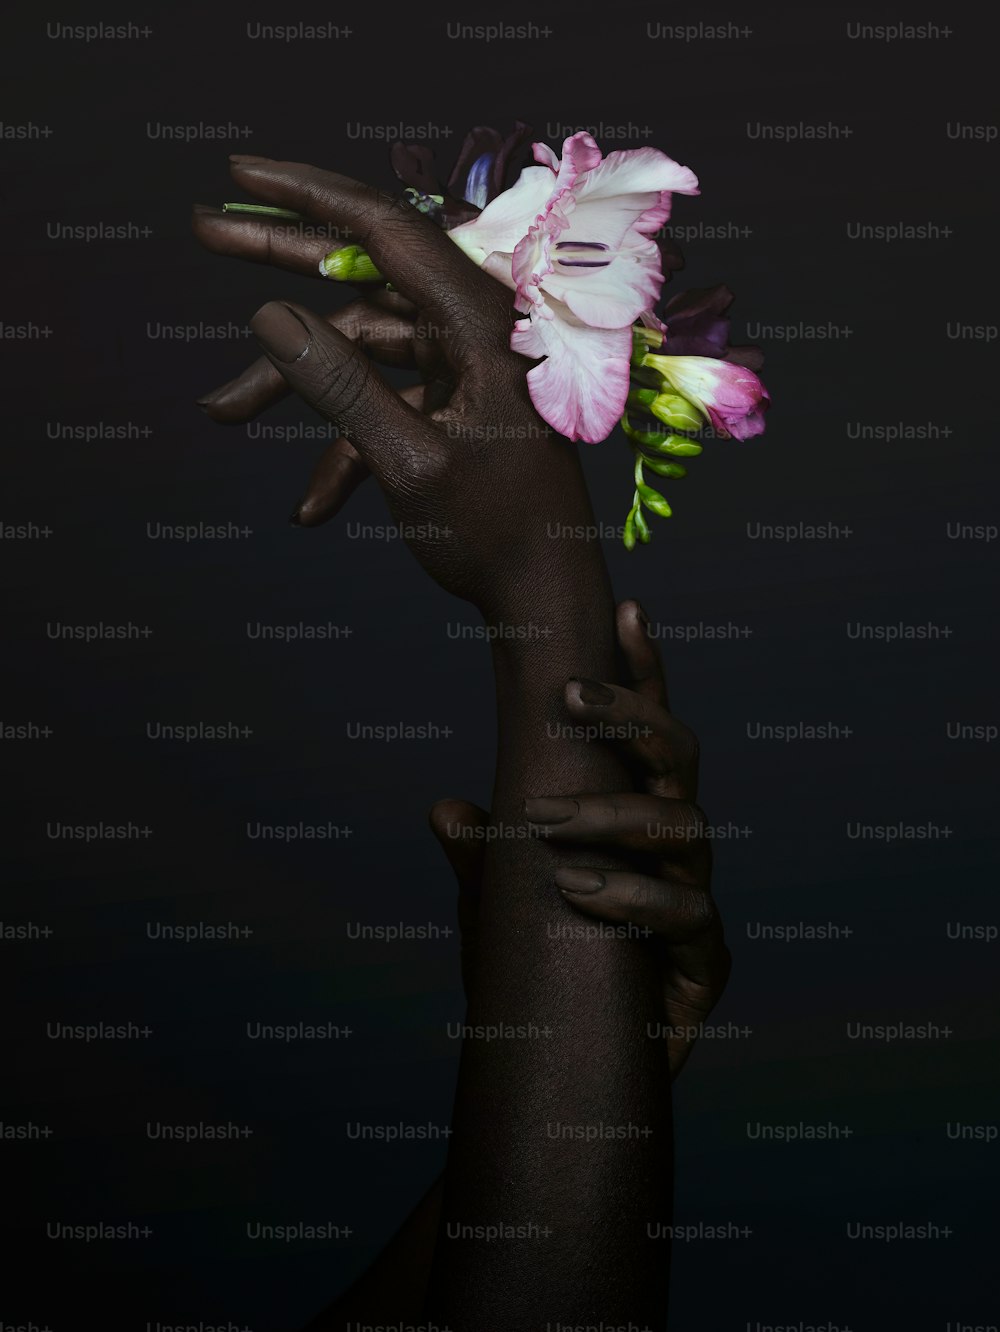 una persona sosteniendo una flor en la mano